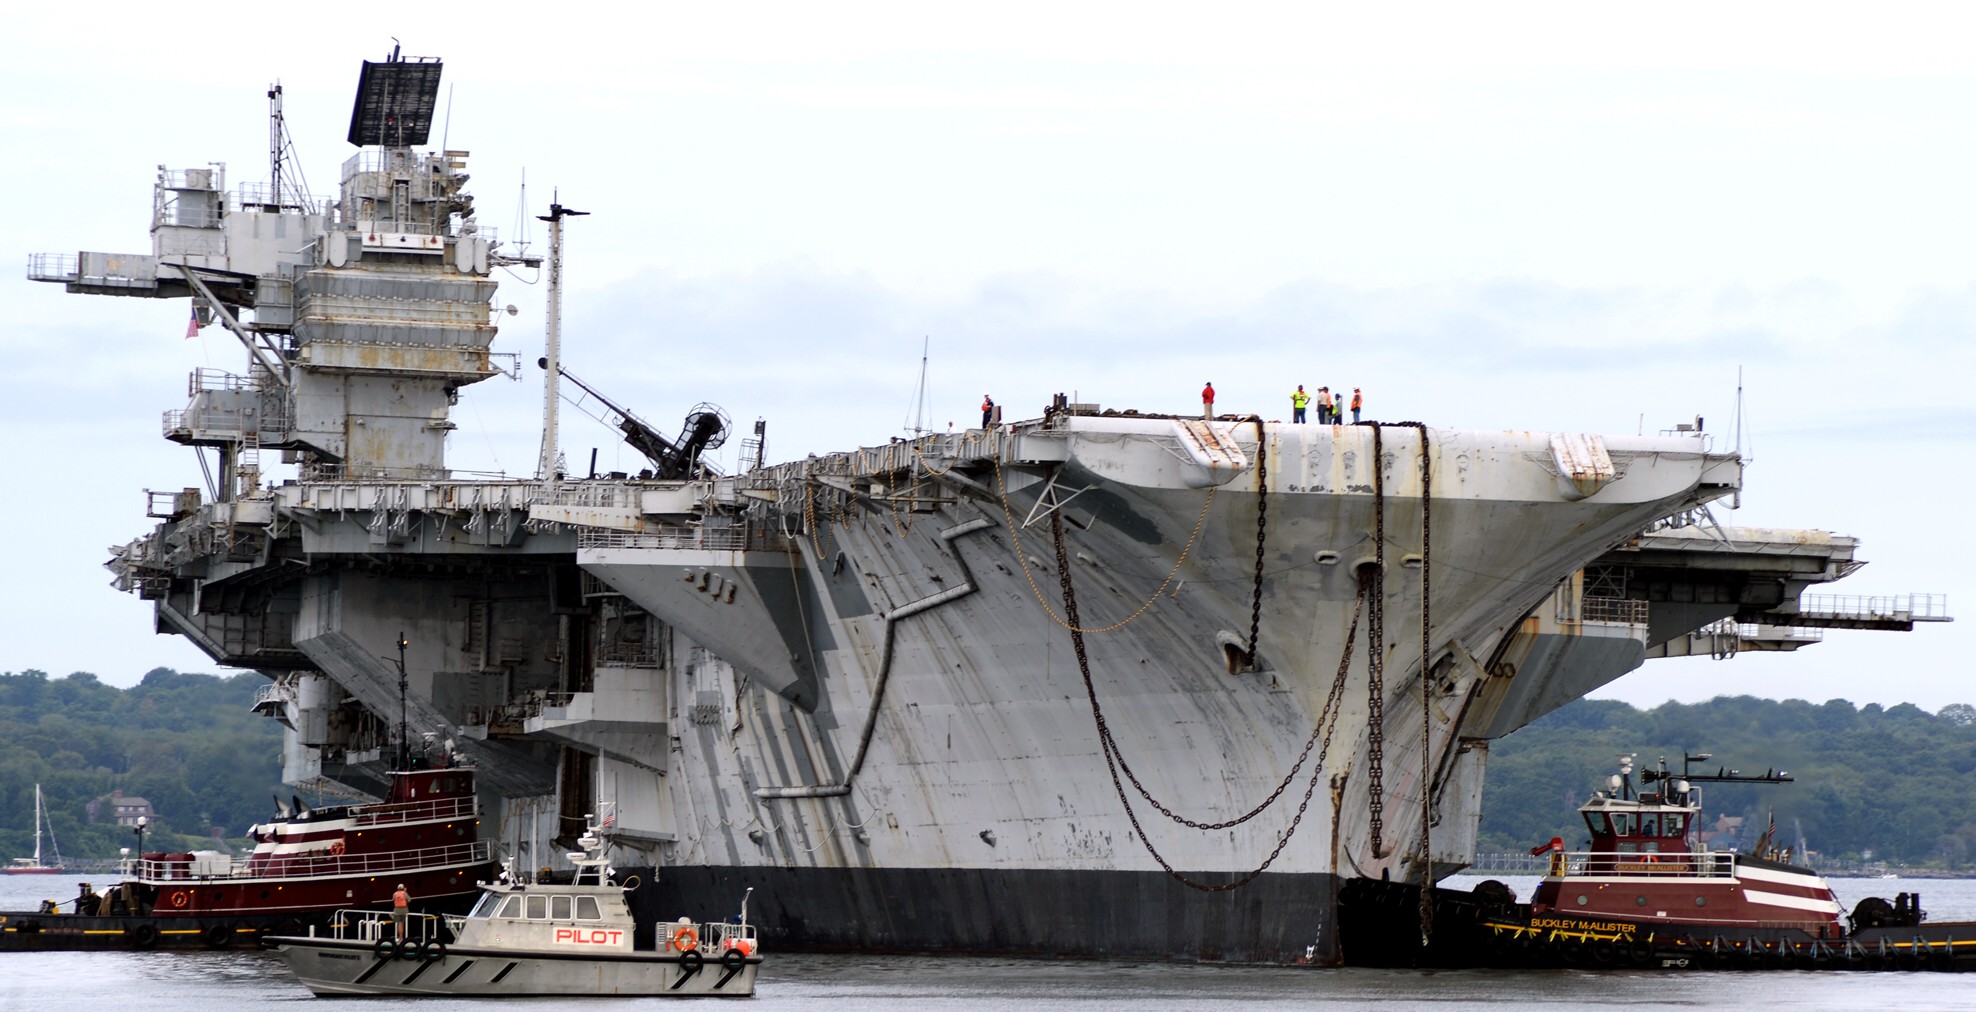 cv-60 uss saratoga forrestal class aircraft carrier us navy naval station newport rhode island 03